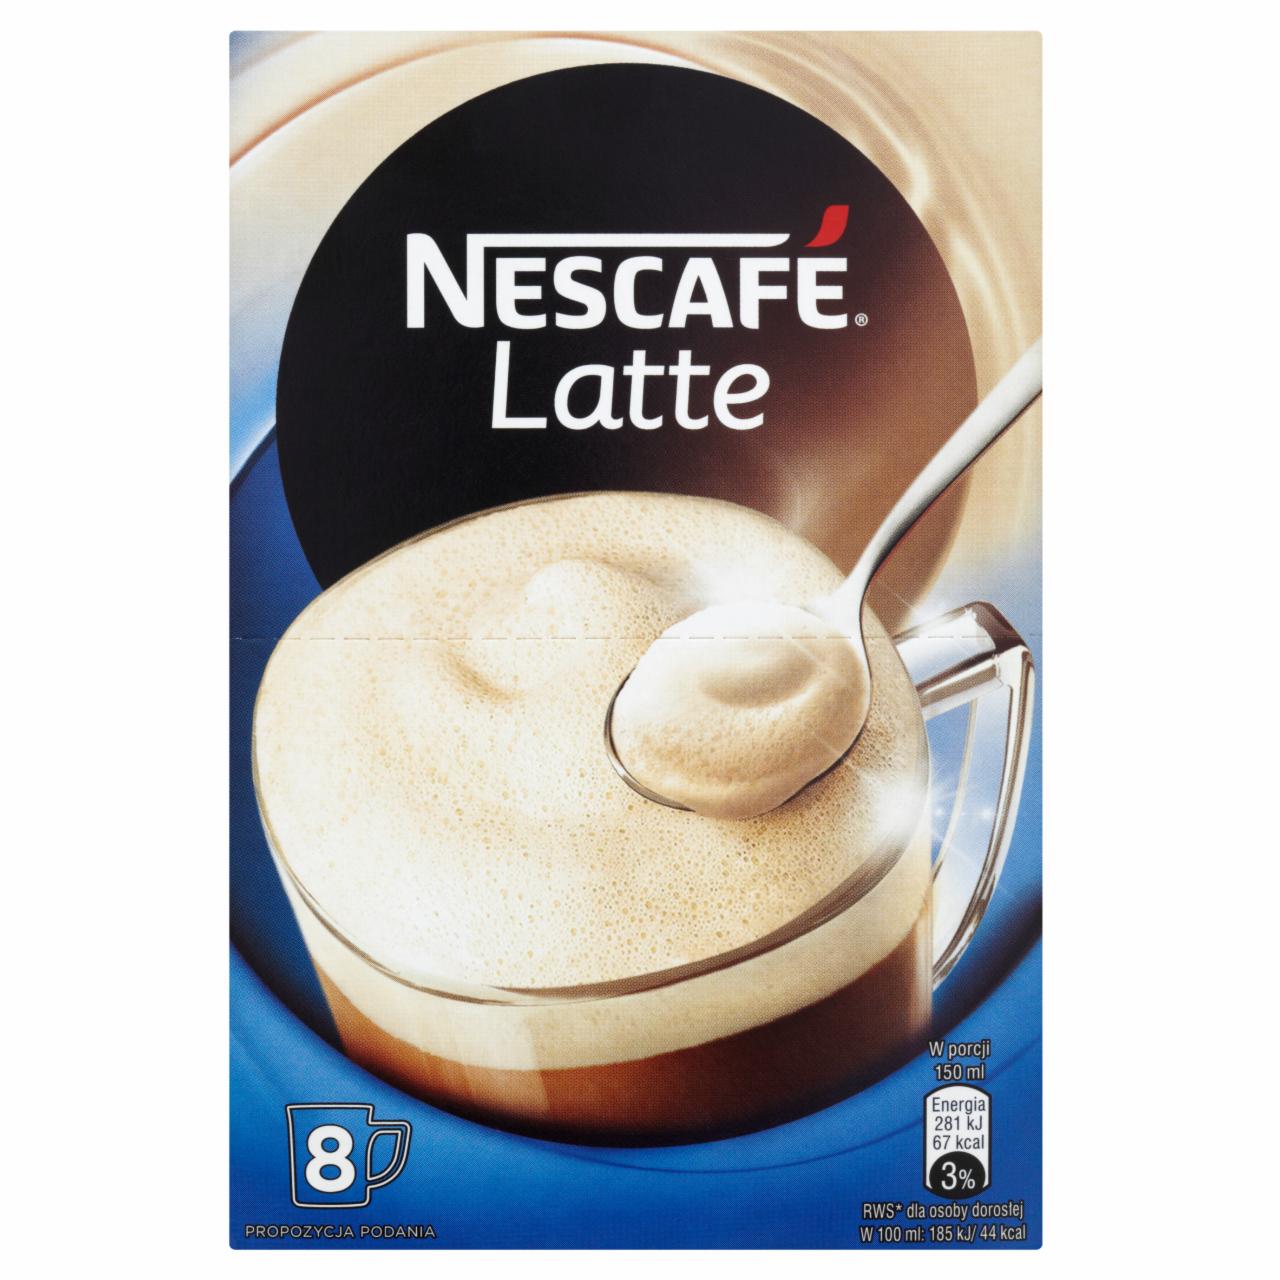 Zdjęcia - Nescafé Latte Rozpuszczalny napój kawowy 120 g (8 sztuk)